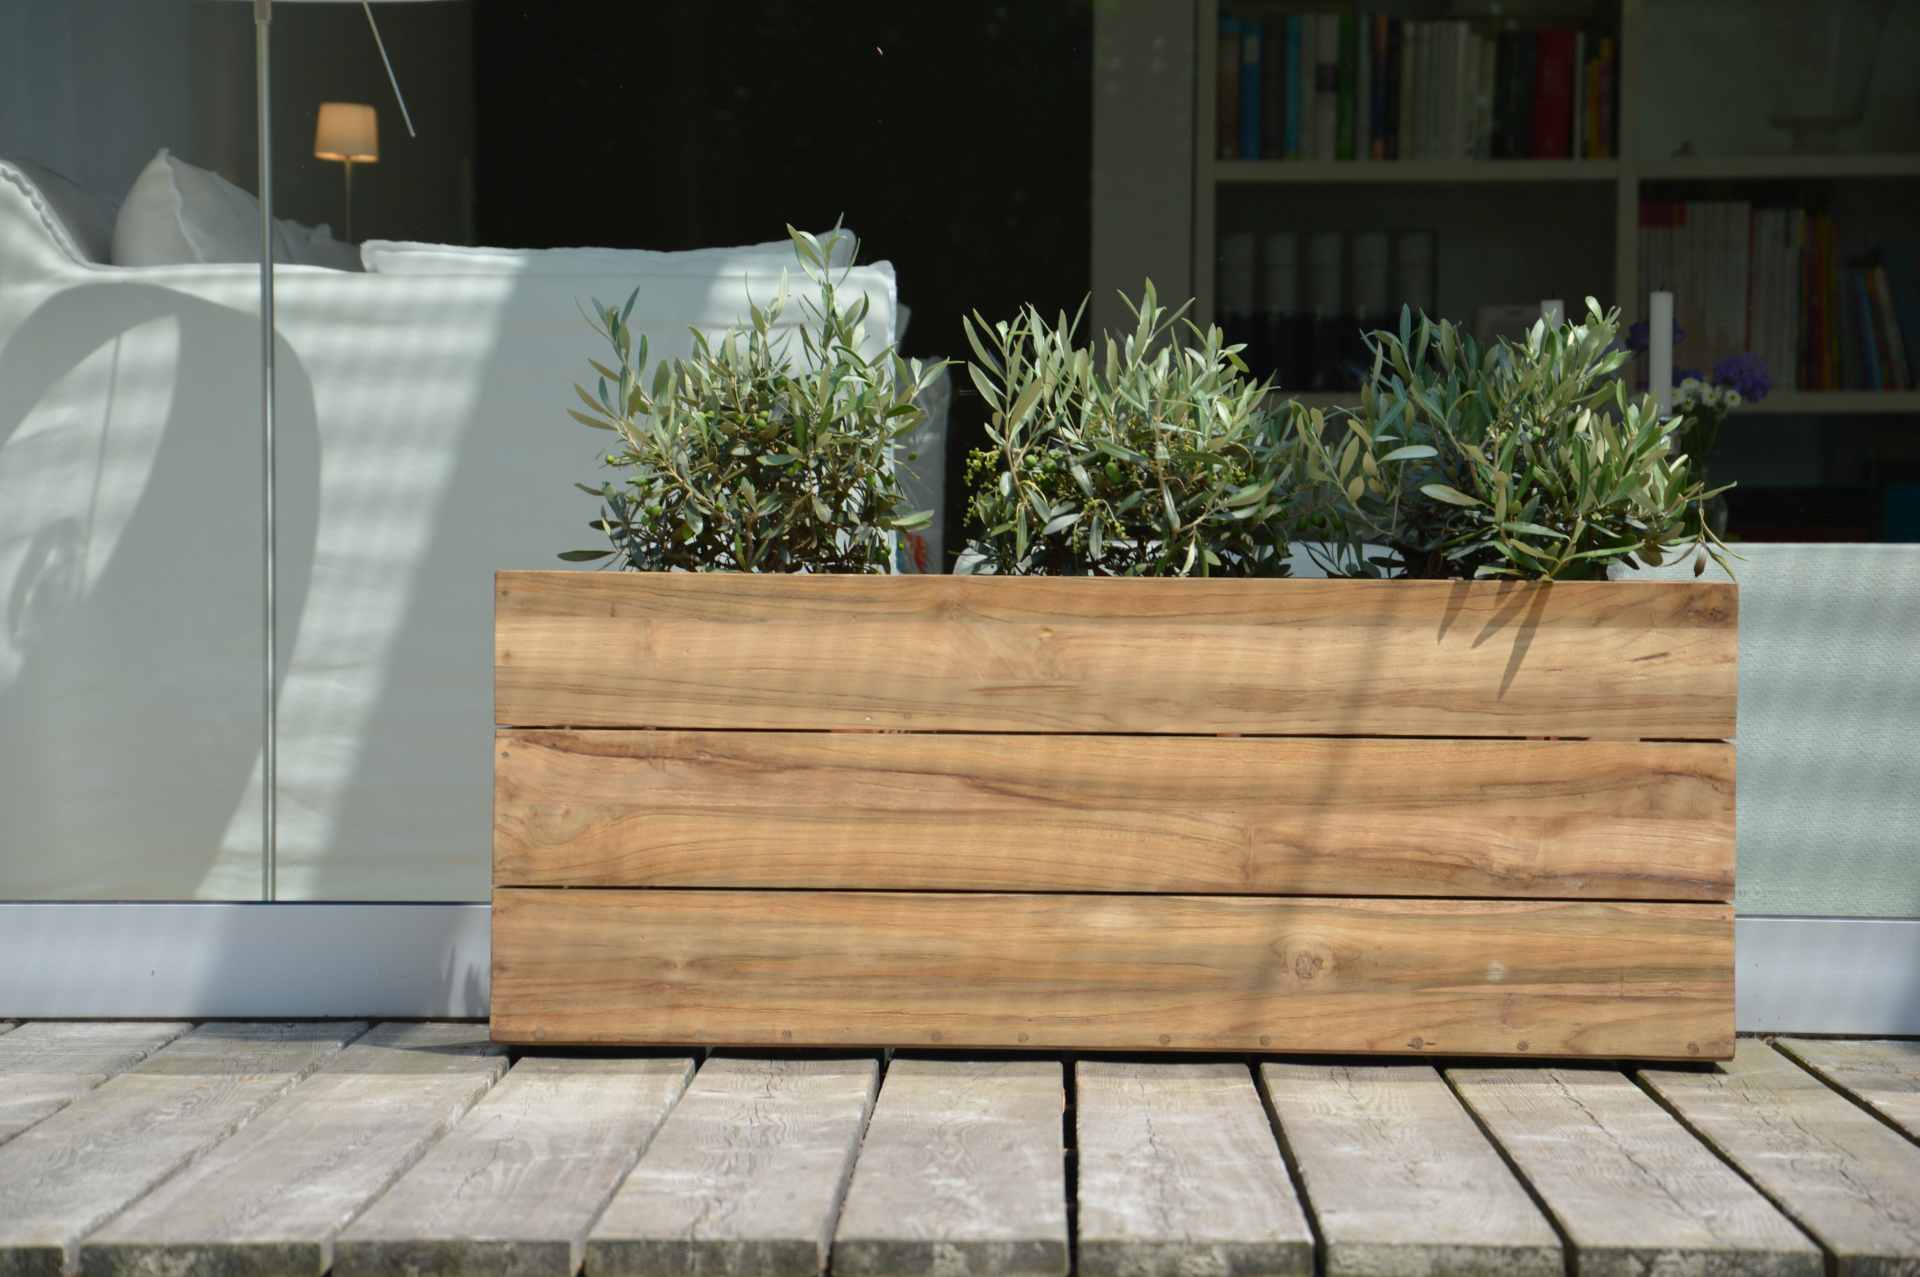 Der Pflanzenbehälter Mini Garden Container wurde aus massivem Holz gefertigt. Das moderne Design wurde von der Marke Jan Kurtz entwickelt.